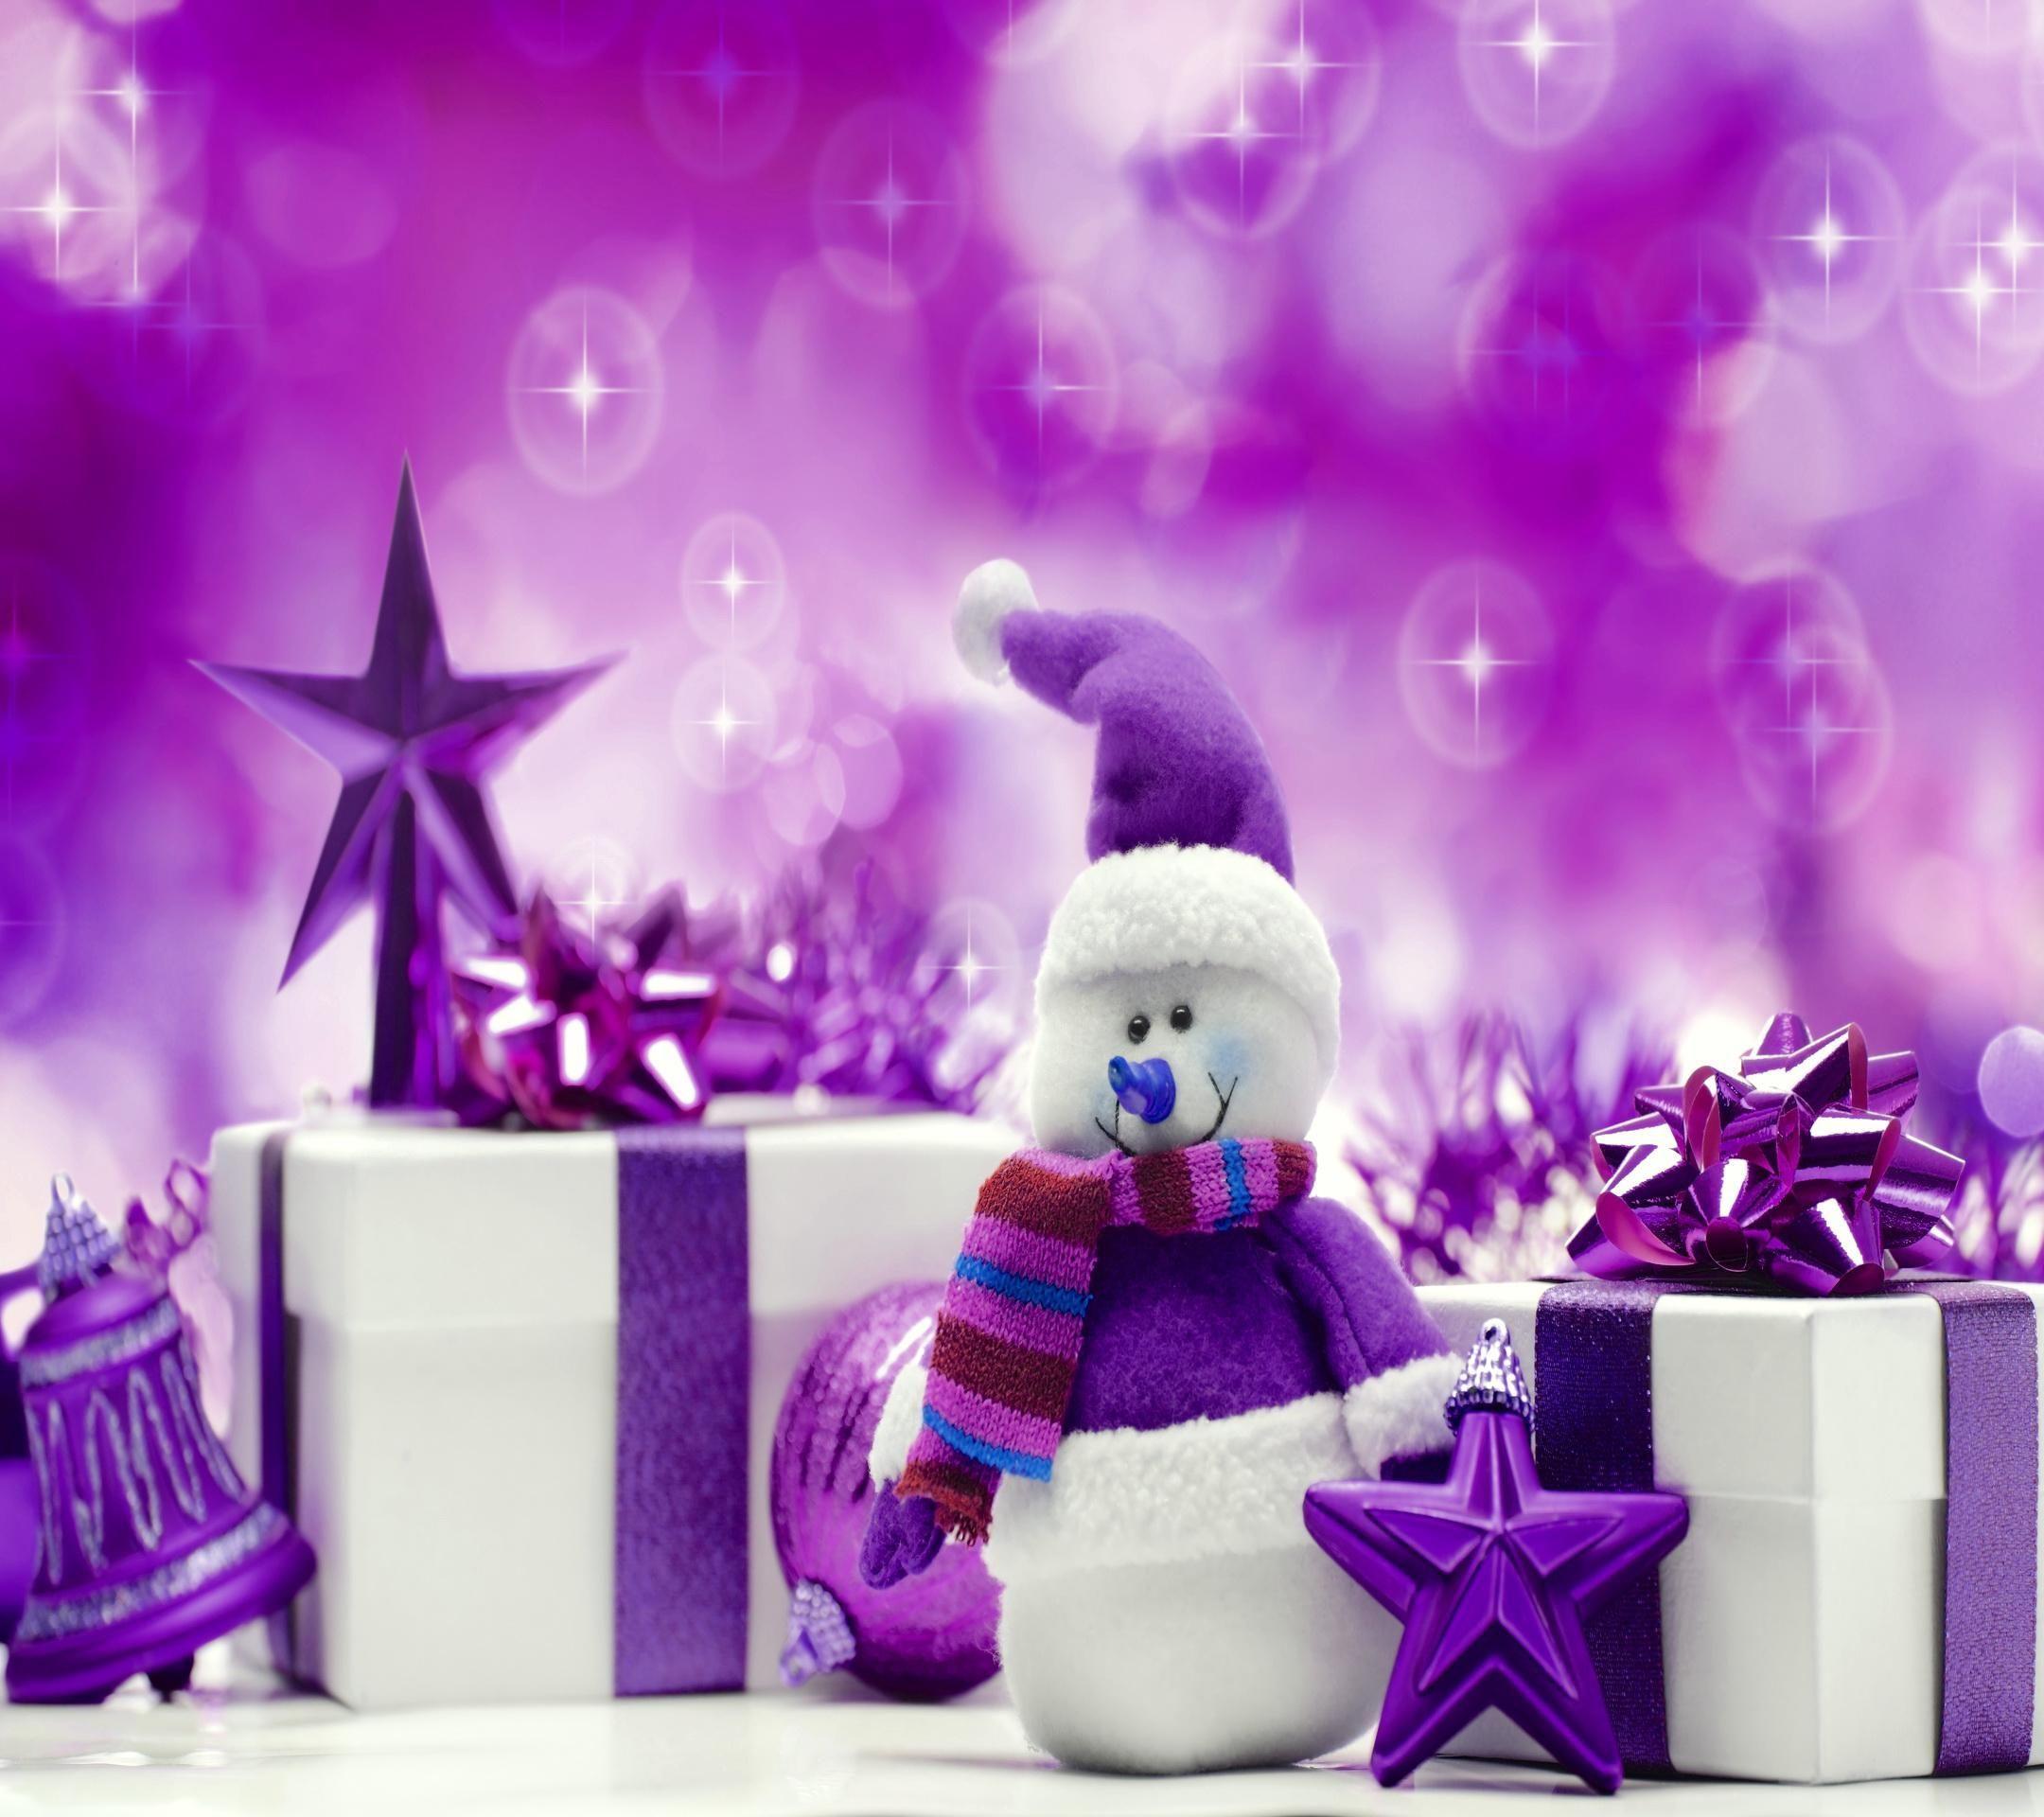 Hình nền Giáng sinh màu tím độc đáo và đầy phong cách, tạo cảm giác ấm áp và thân thiện vào mùa lễ hội. Giúp cho màn hình của bạn trở nên nổi bật và sẵn sàng chào đón ngày Giáng sinh.